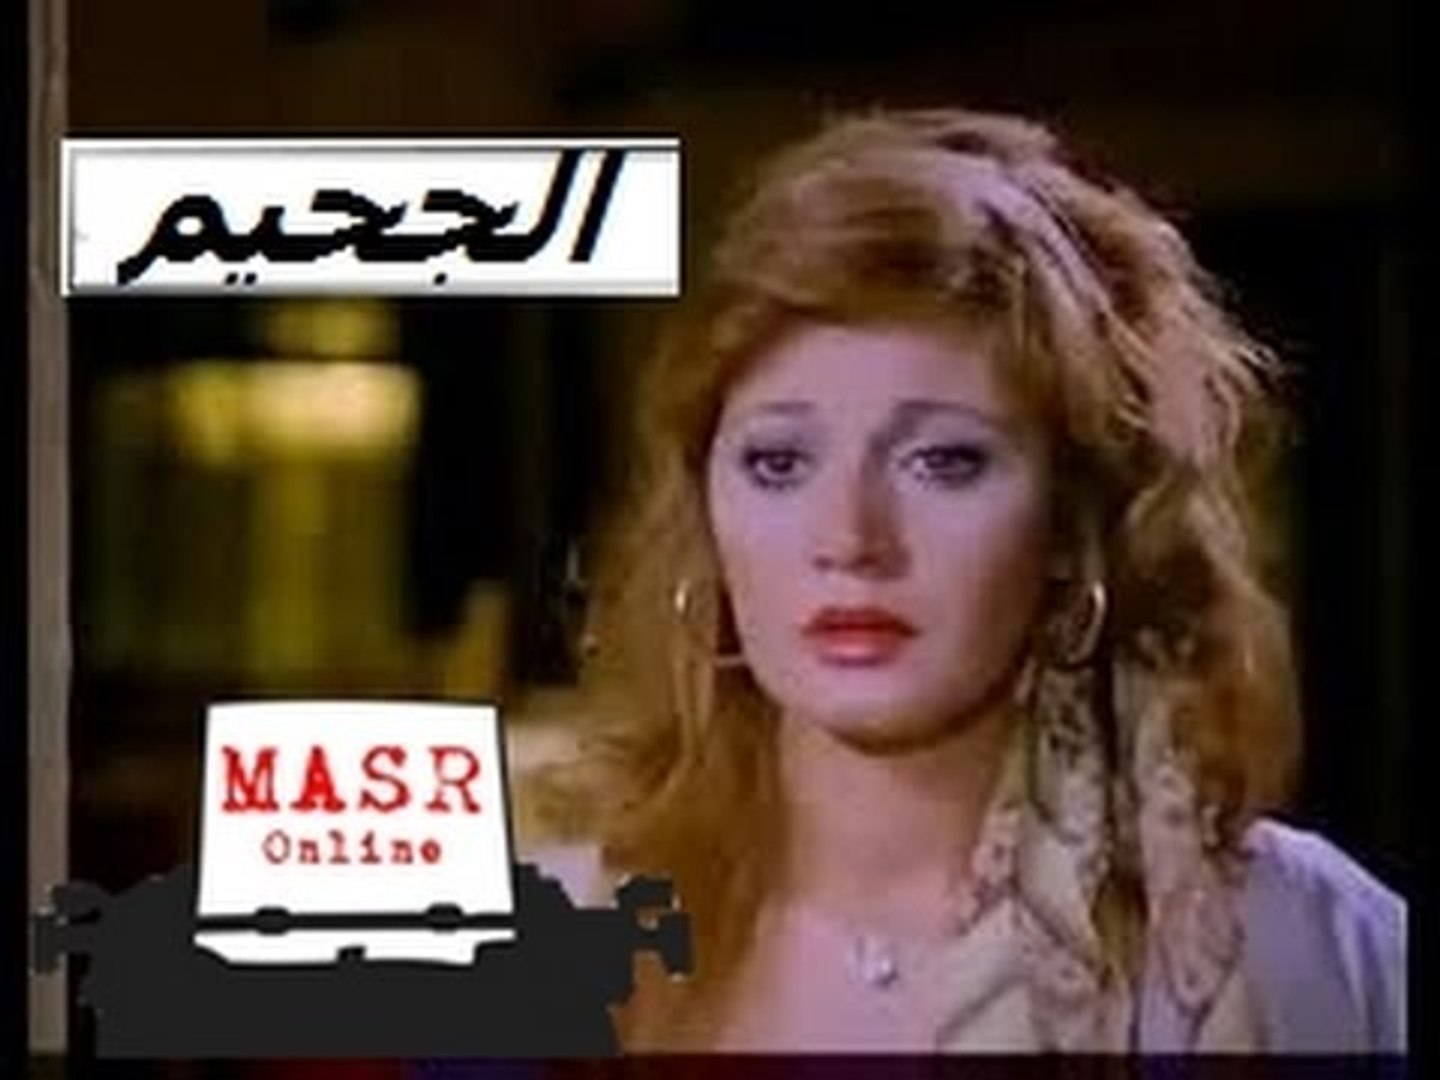 الفيلم العربي I الجحيم I بطولة عادل إمام ومديحة كامل - فيديو Dailymotion